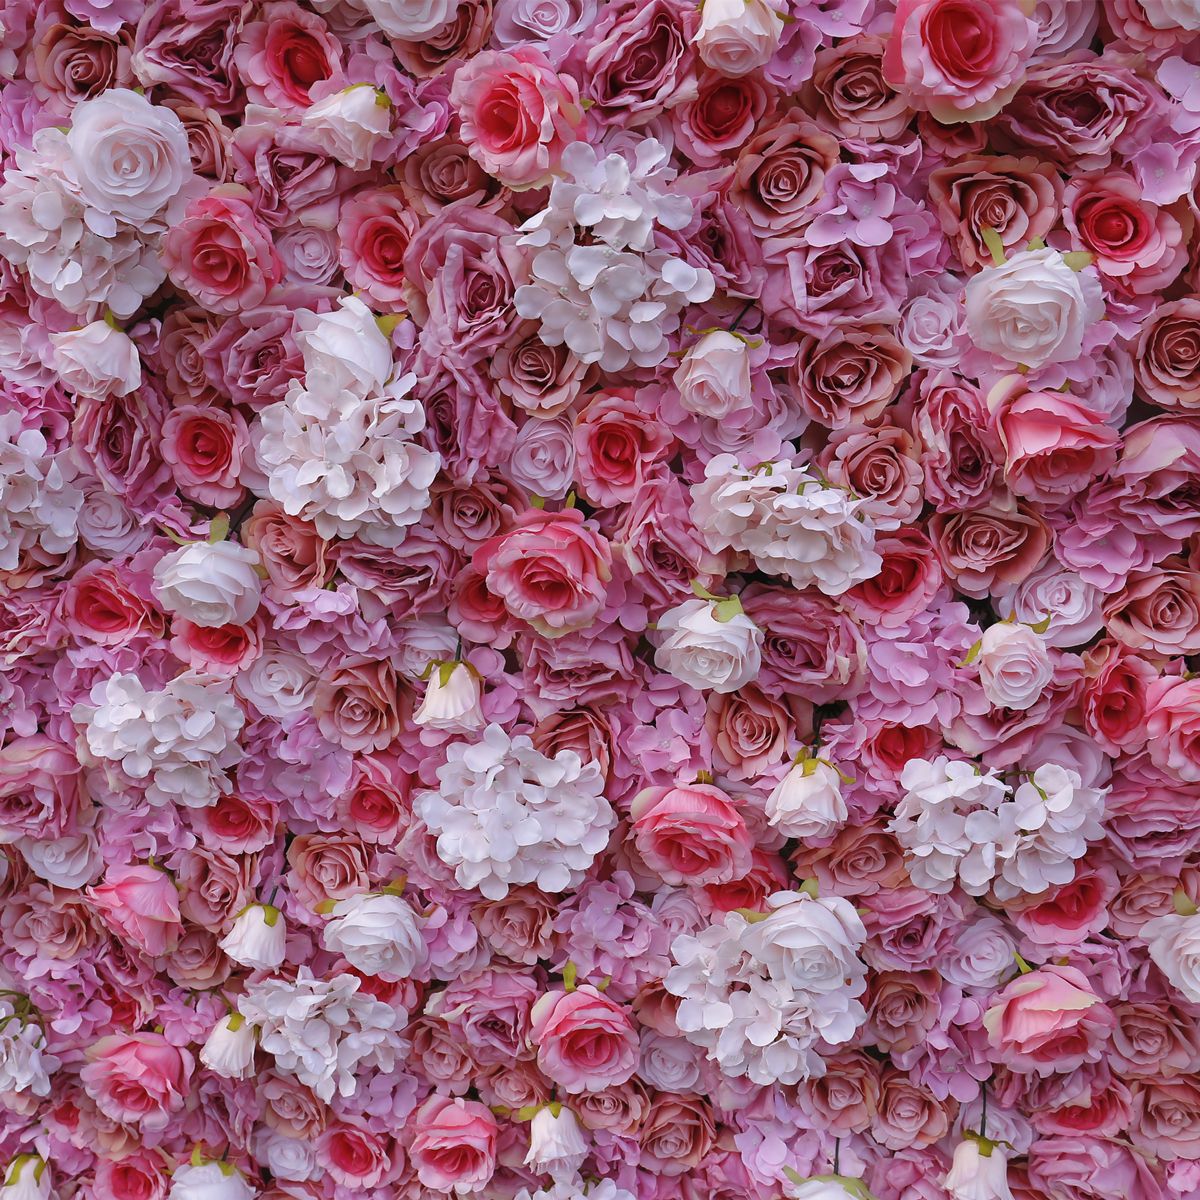  סימולציית בד חתונה רקע קיר קיר רקע קיר סטודיו קיר משי שורת פרח צמח קיר פרח קיר 